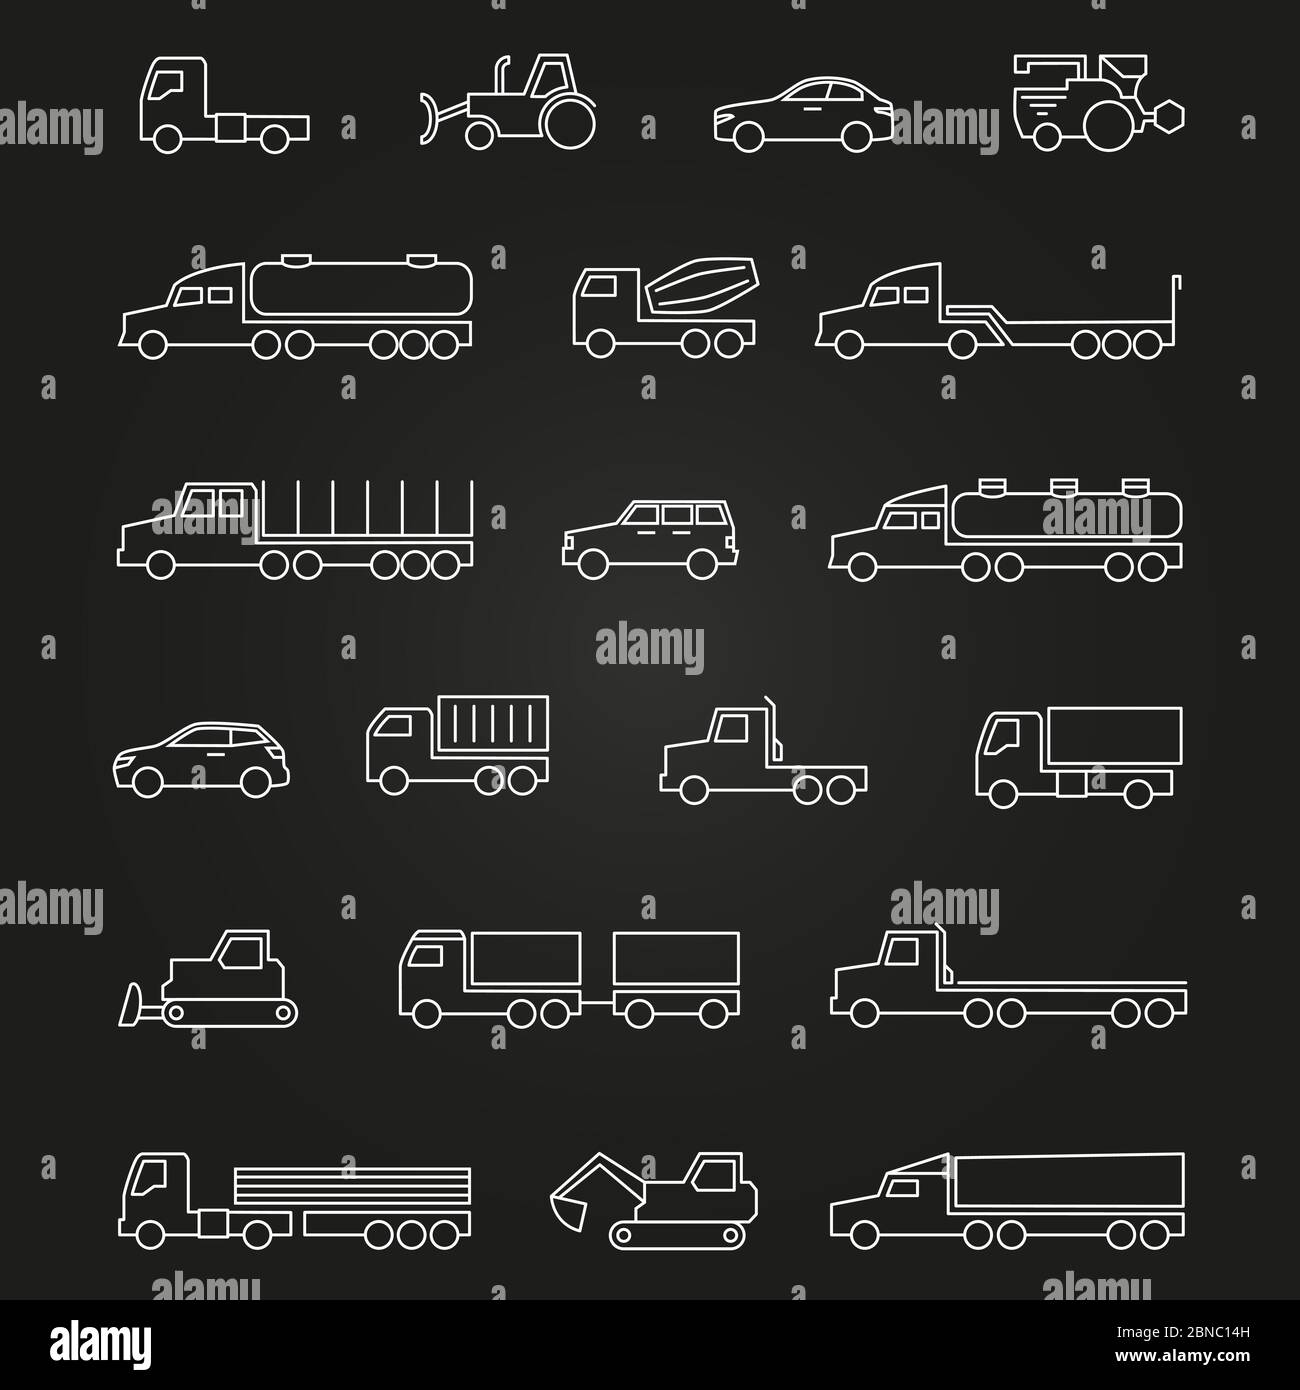 LKW, Autos, Baumaschinen weiße Linie Symbole auf schwarz isoliert gesetzt. Vektorgrafik Stock Vektor